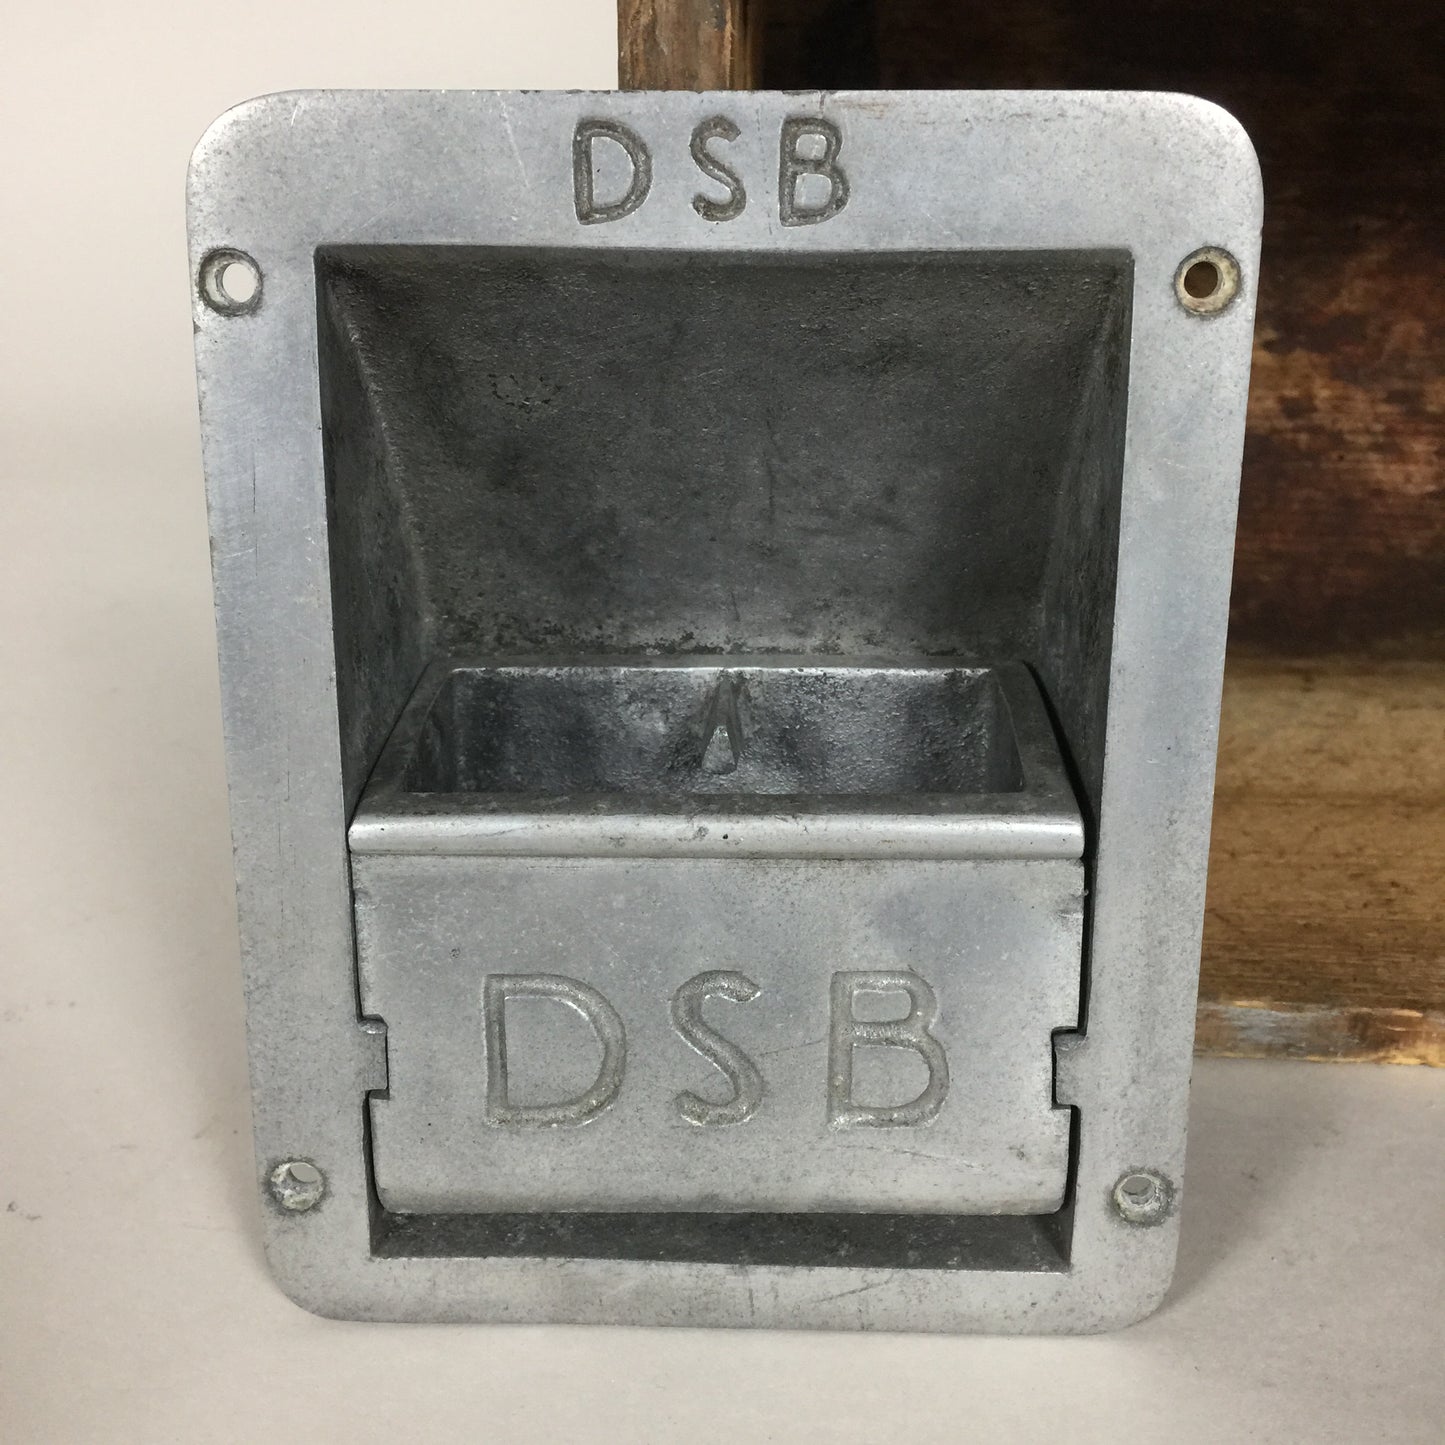 DSB Aschenbecher im Industriedesign